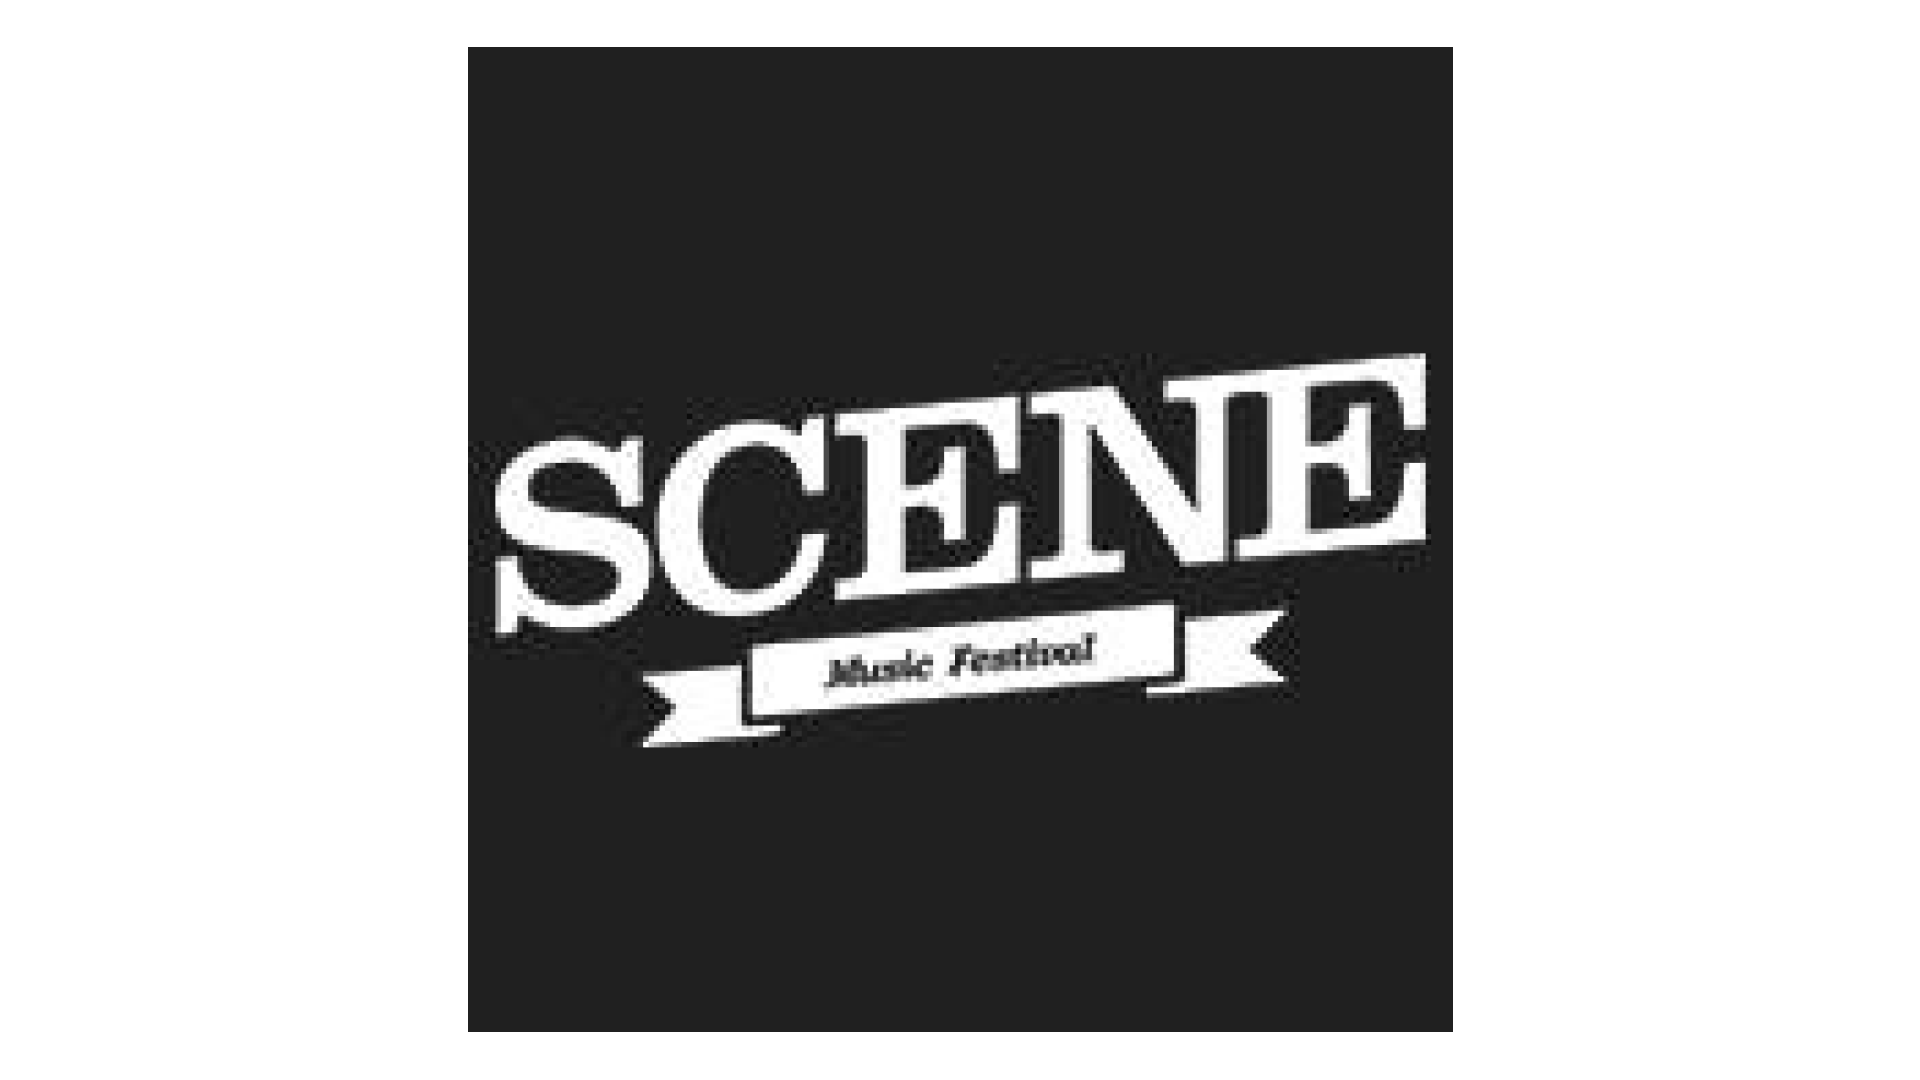 SCENE Music Festival Logo